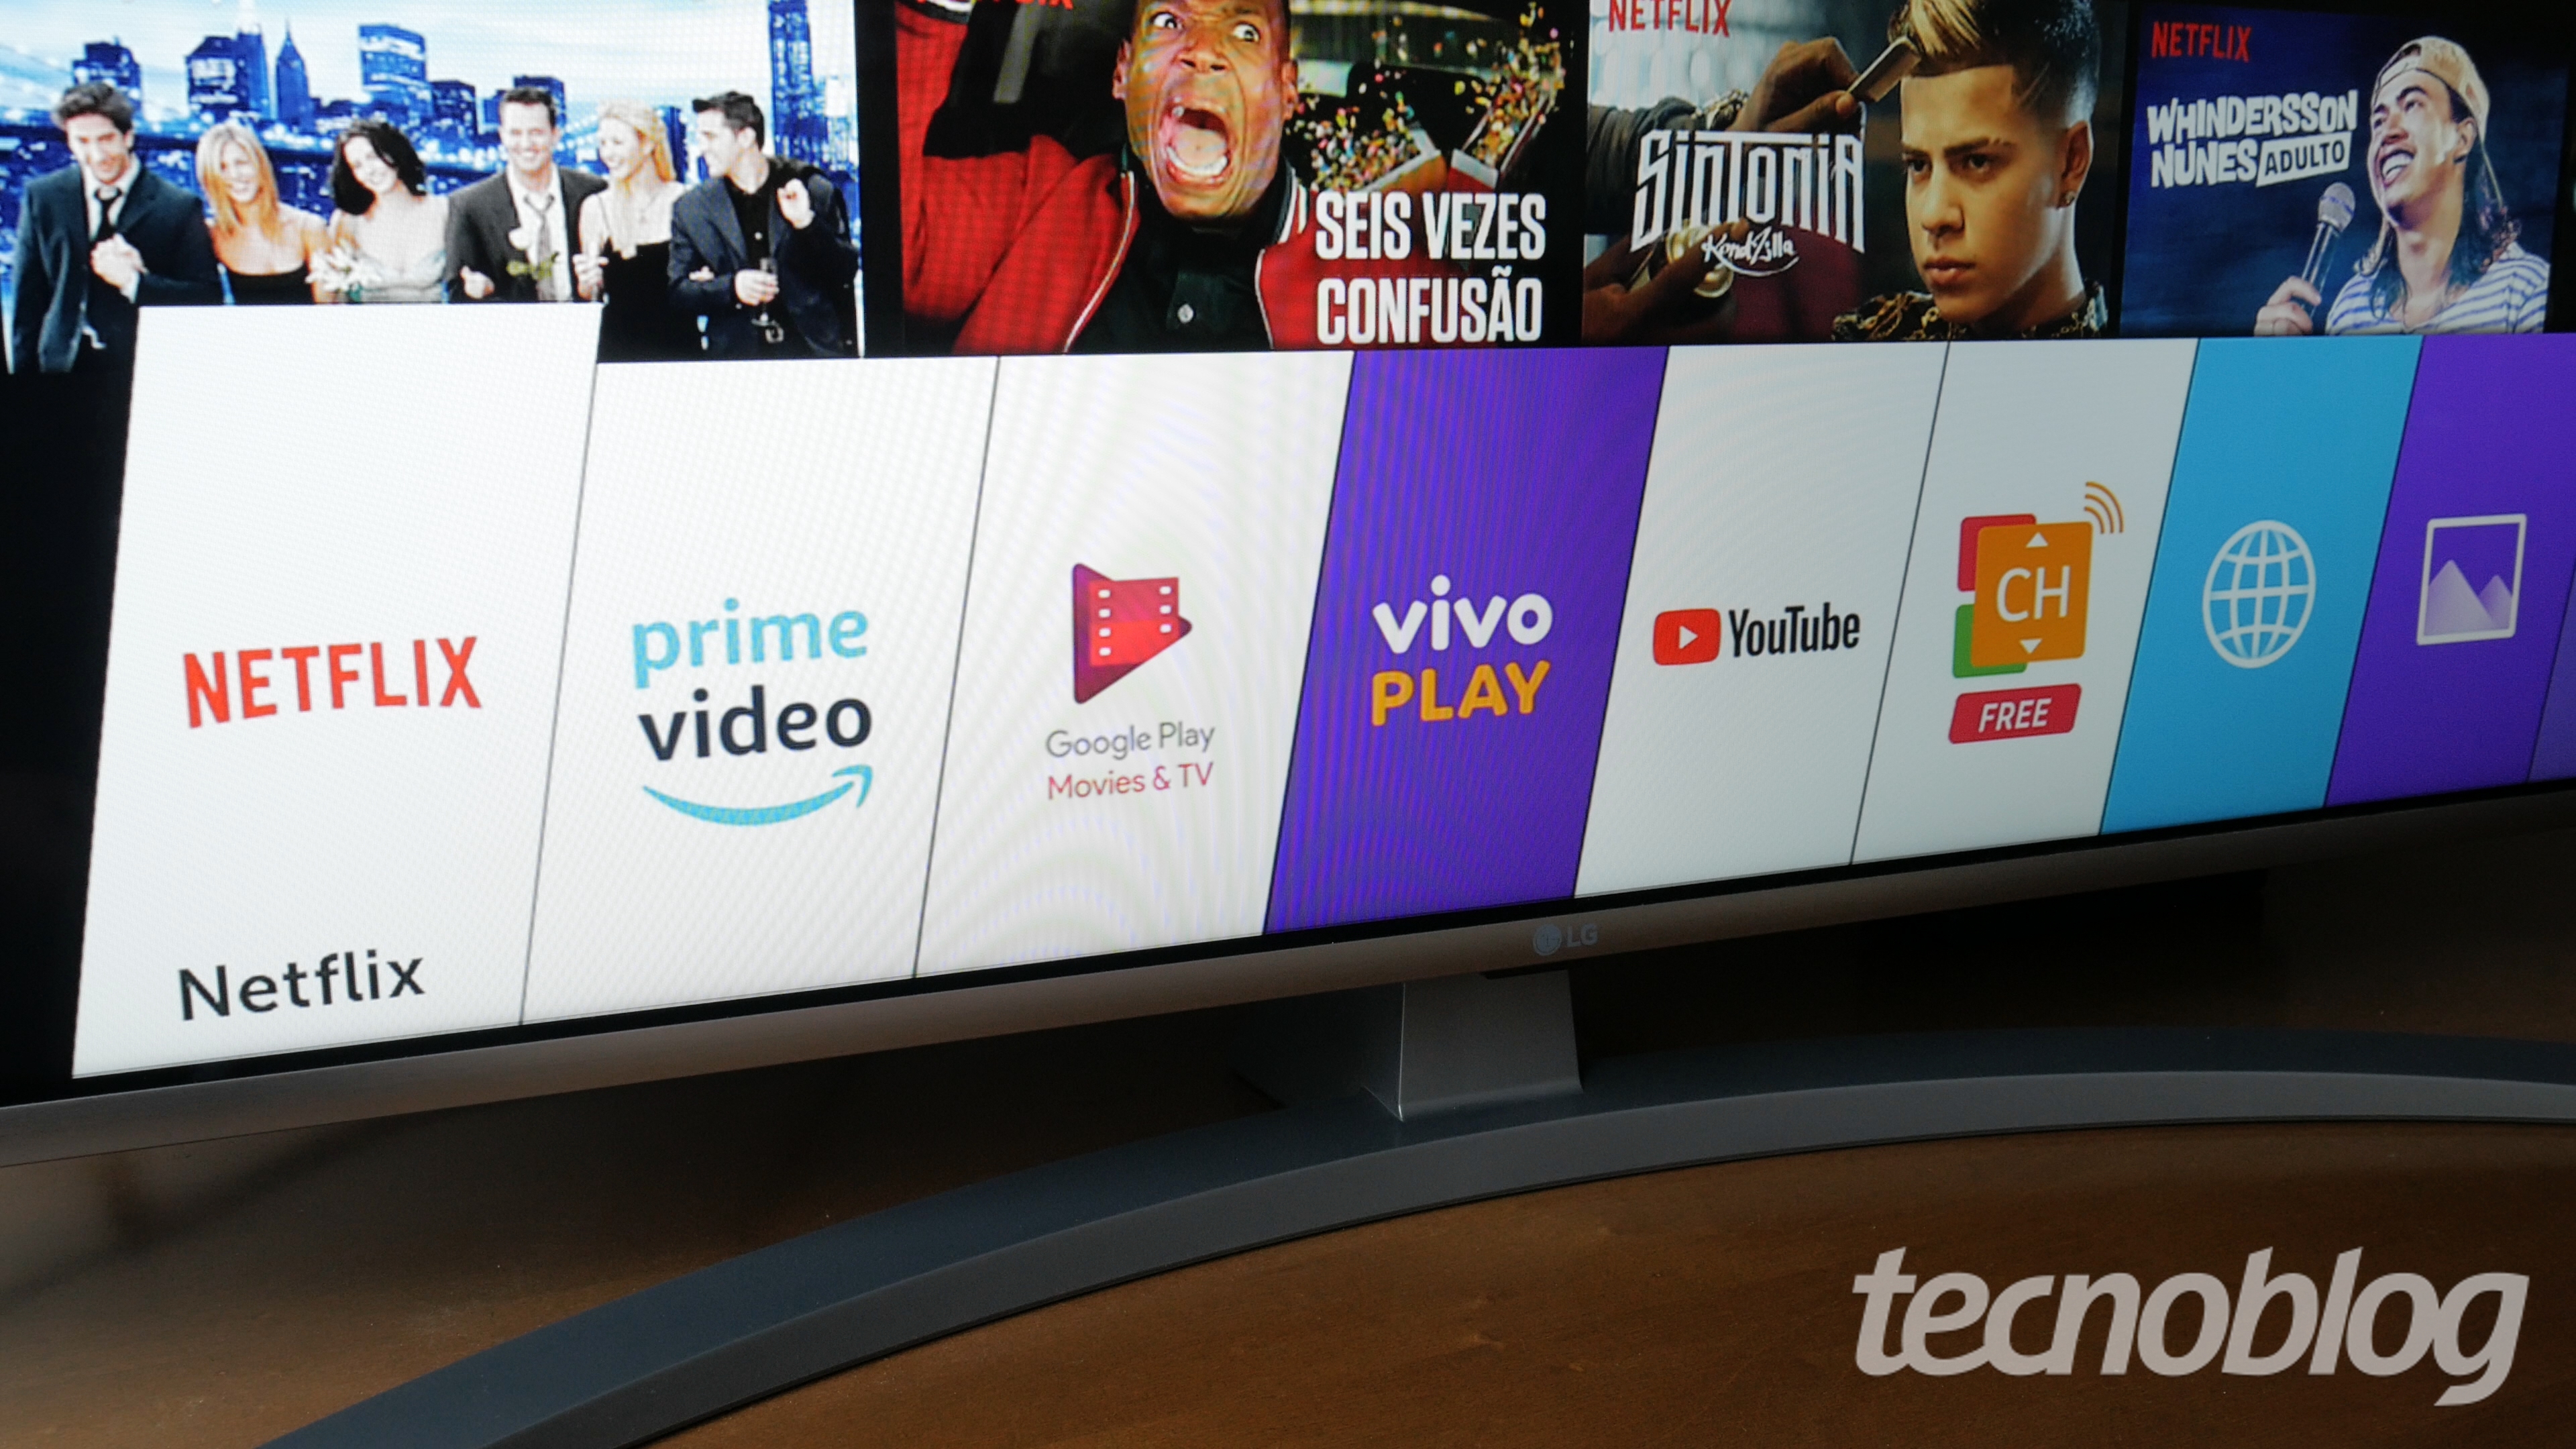 Google Play Filmes vai sumir das TVs com Android TV em outubro